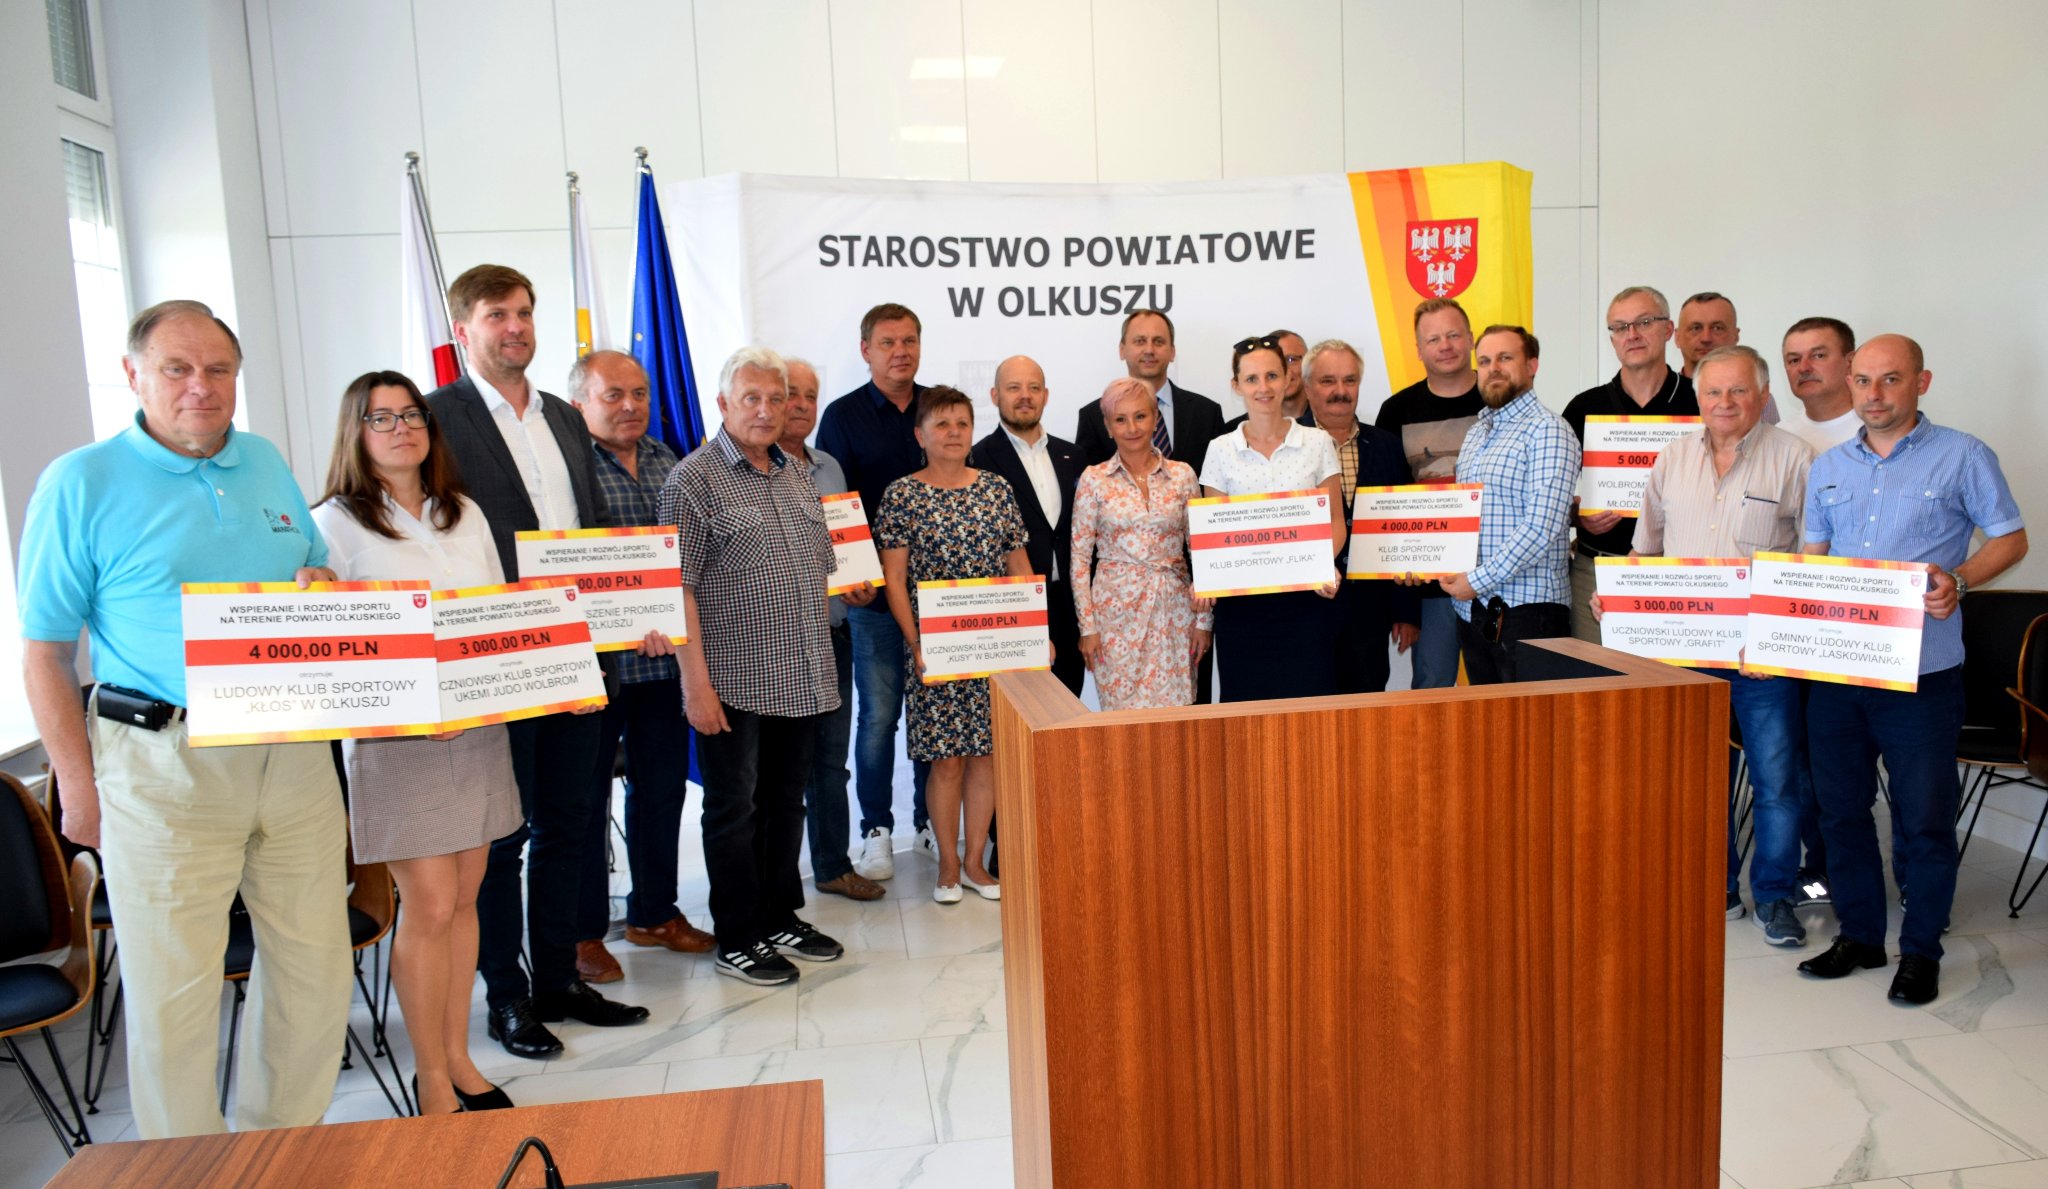 Przedstawiciele Powiatu Olkuskiego oraz przedstawiciele klubów sportowych, które otrzymały dotacje trzymający symboliczne czeki